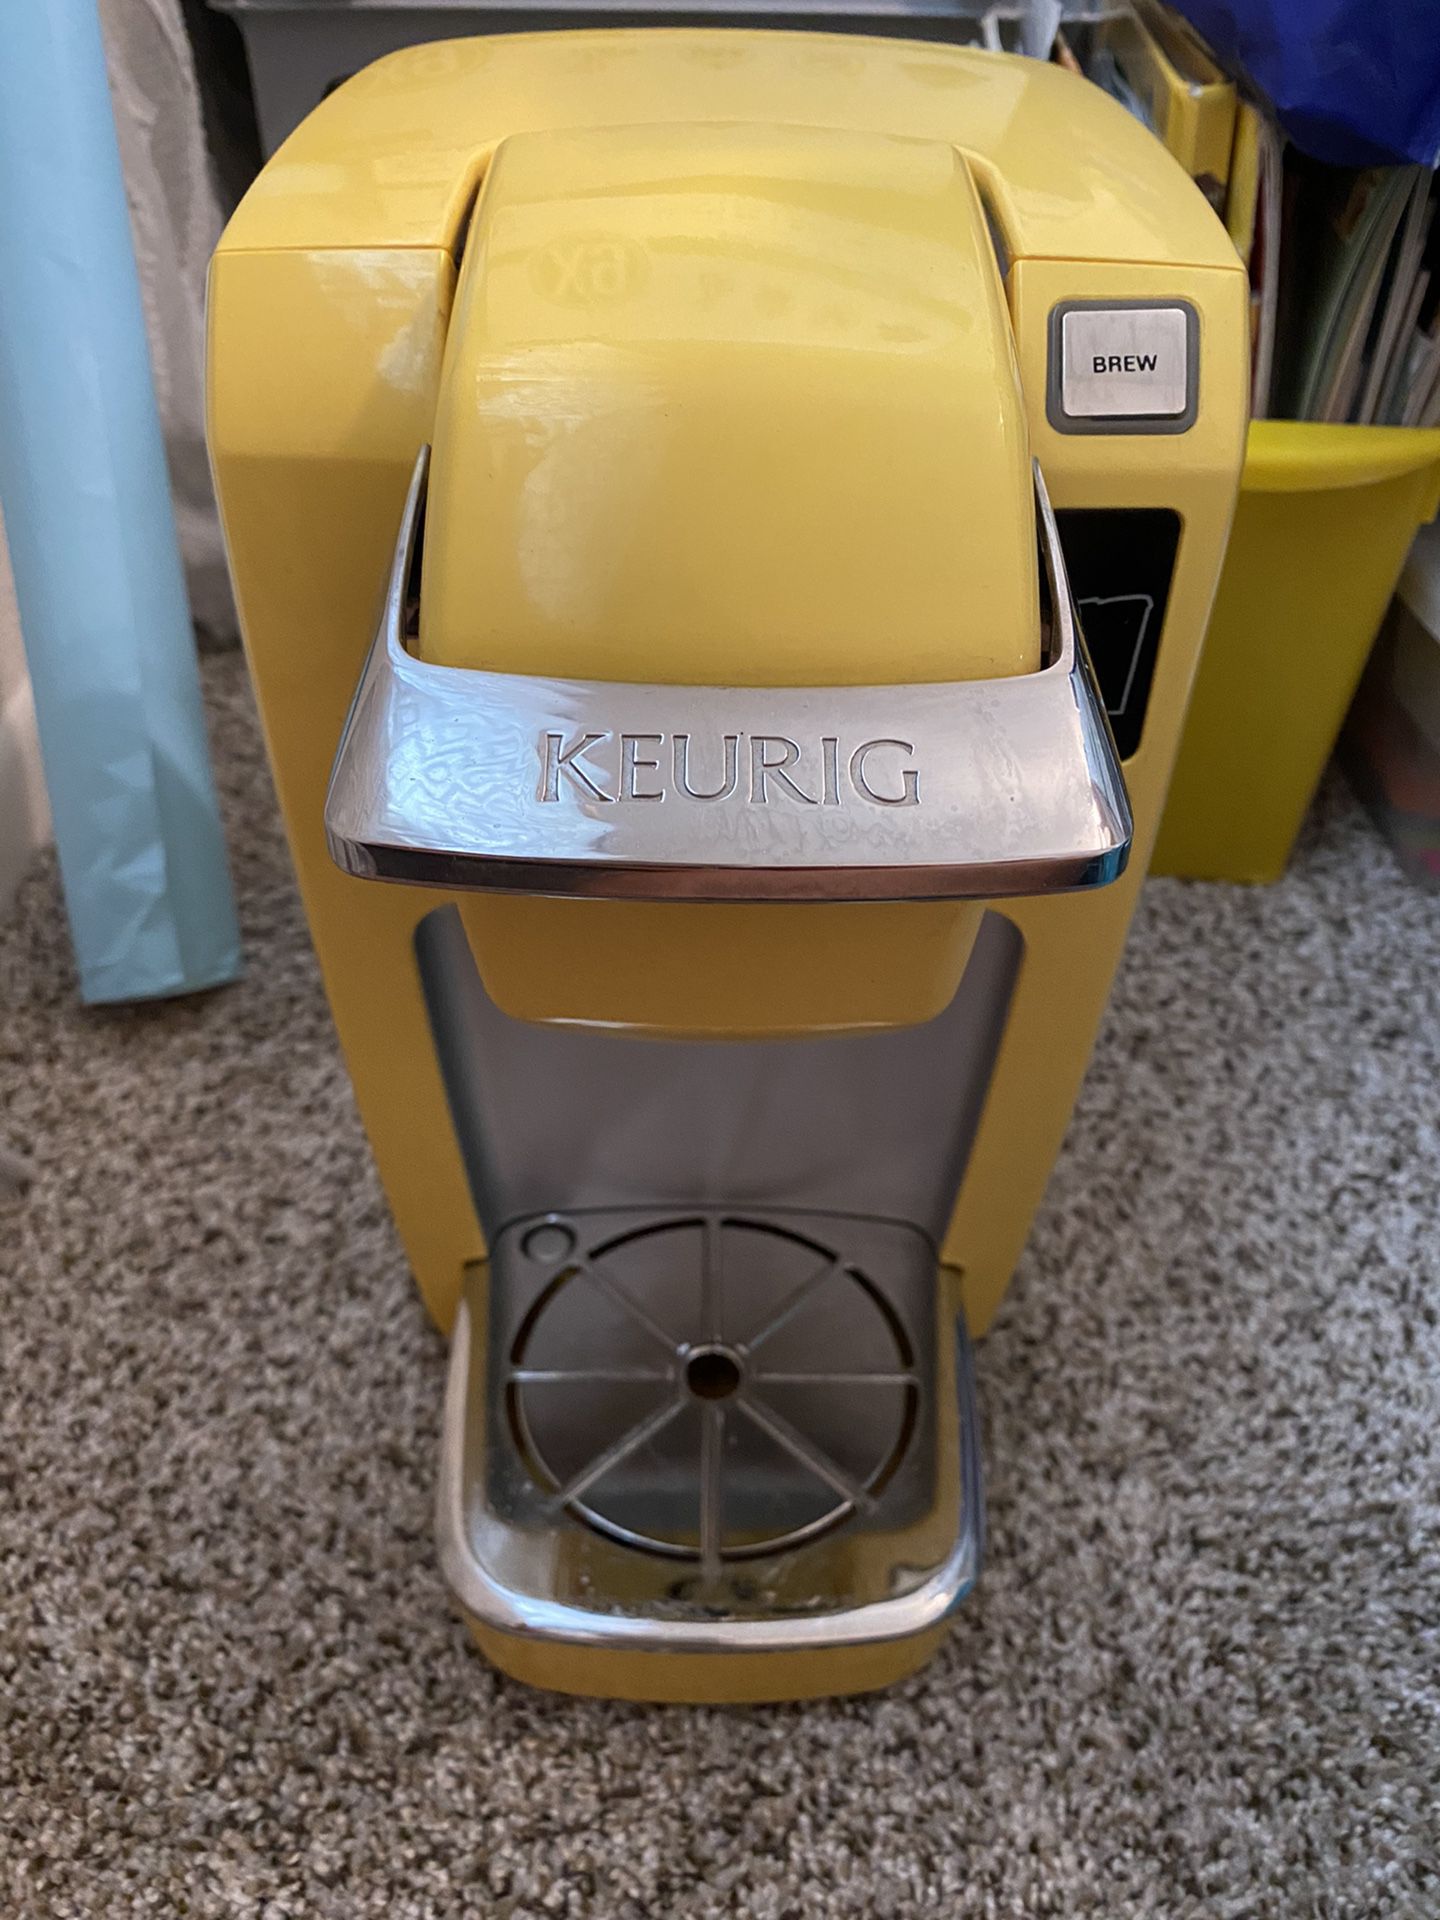 Keurig single serve coffee maker